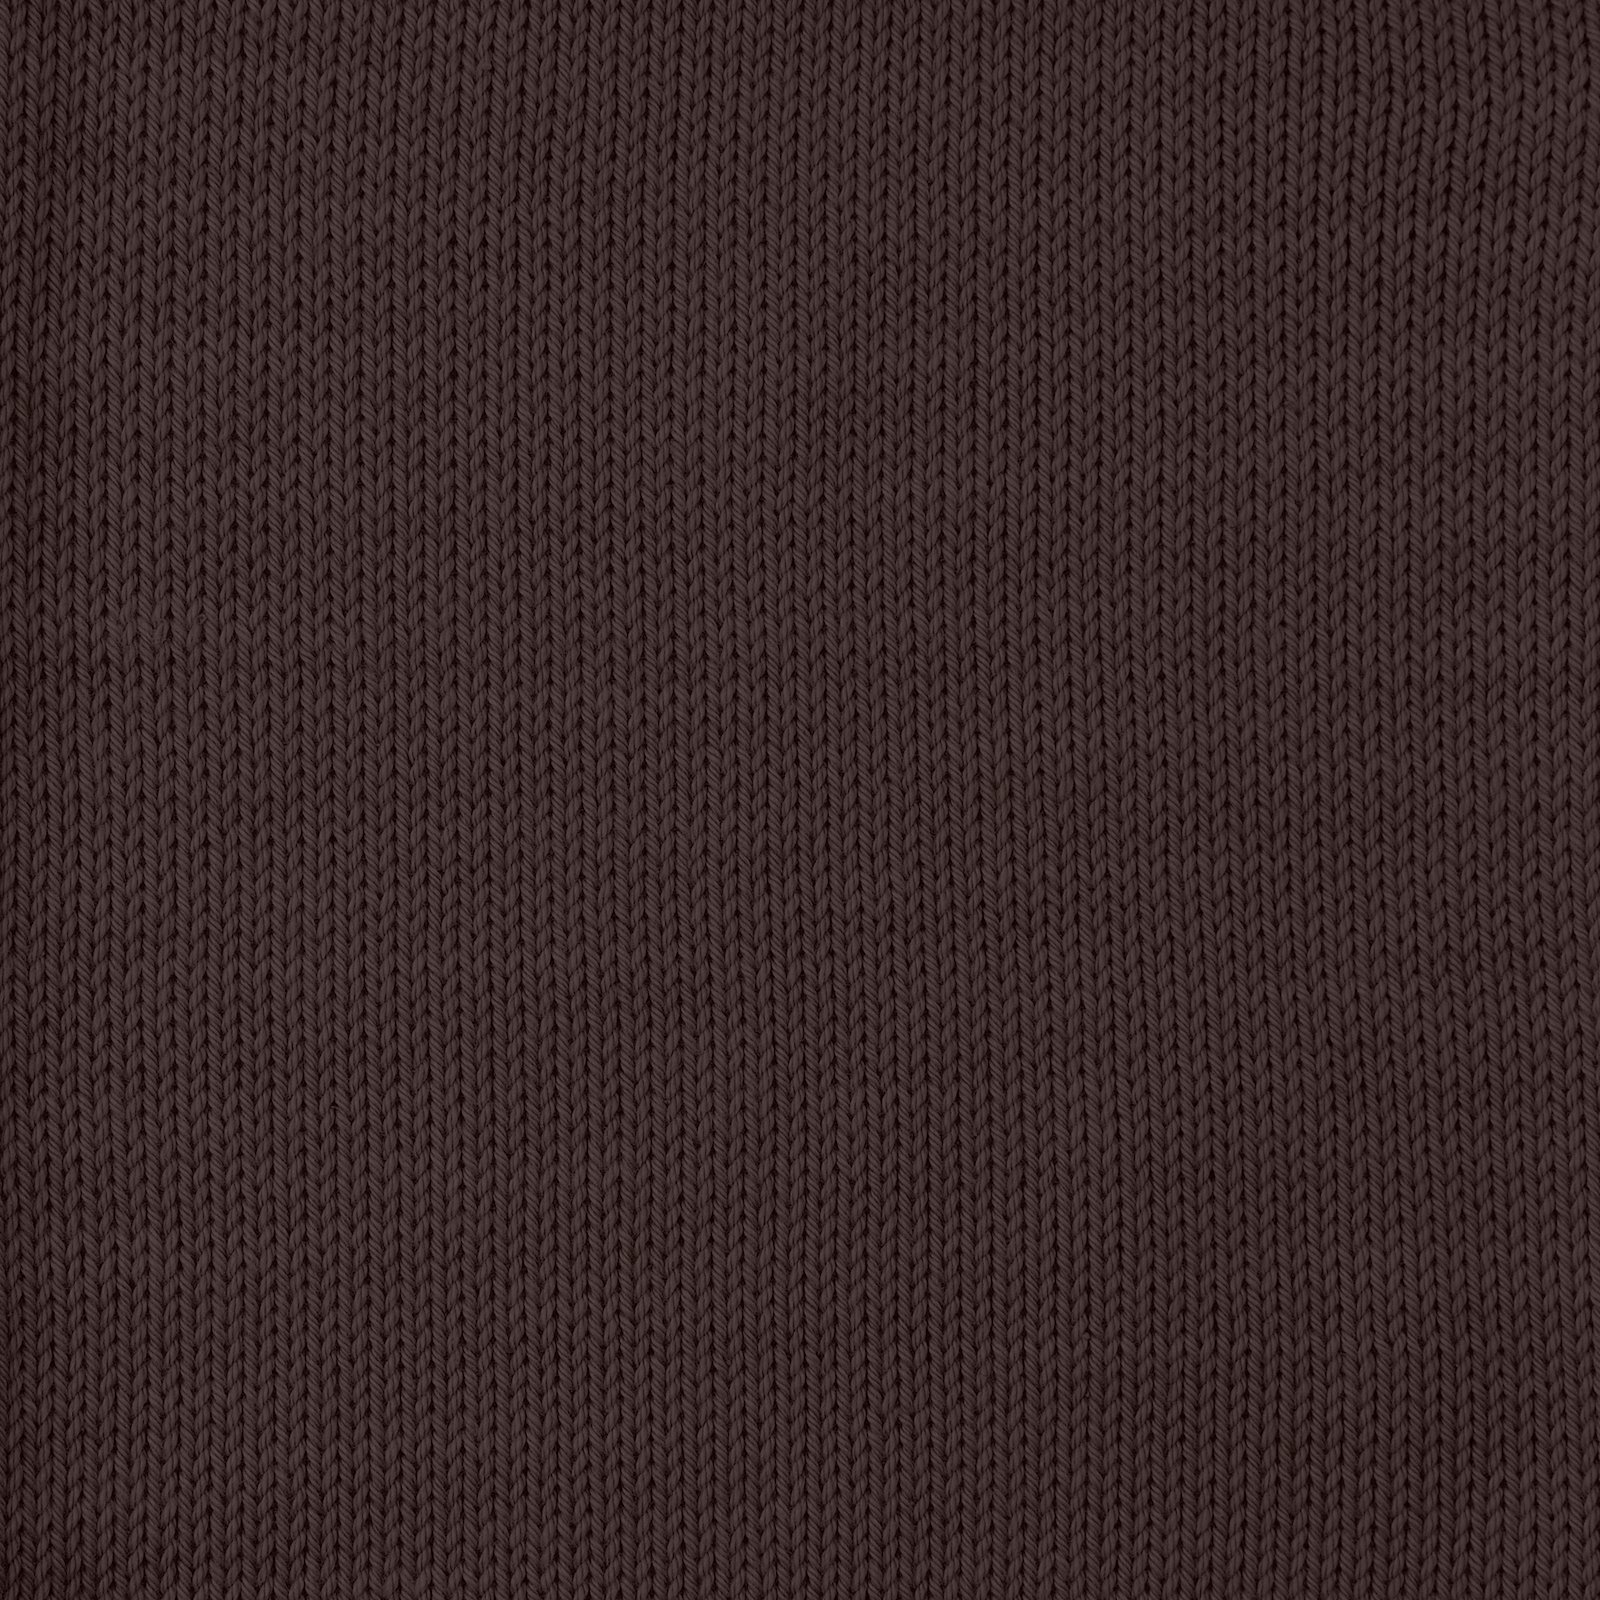 FRAYA, 100% cotton 8/4  yarn  "Colourful", dark brown 90060036_sskit